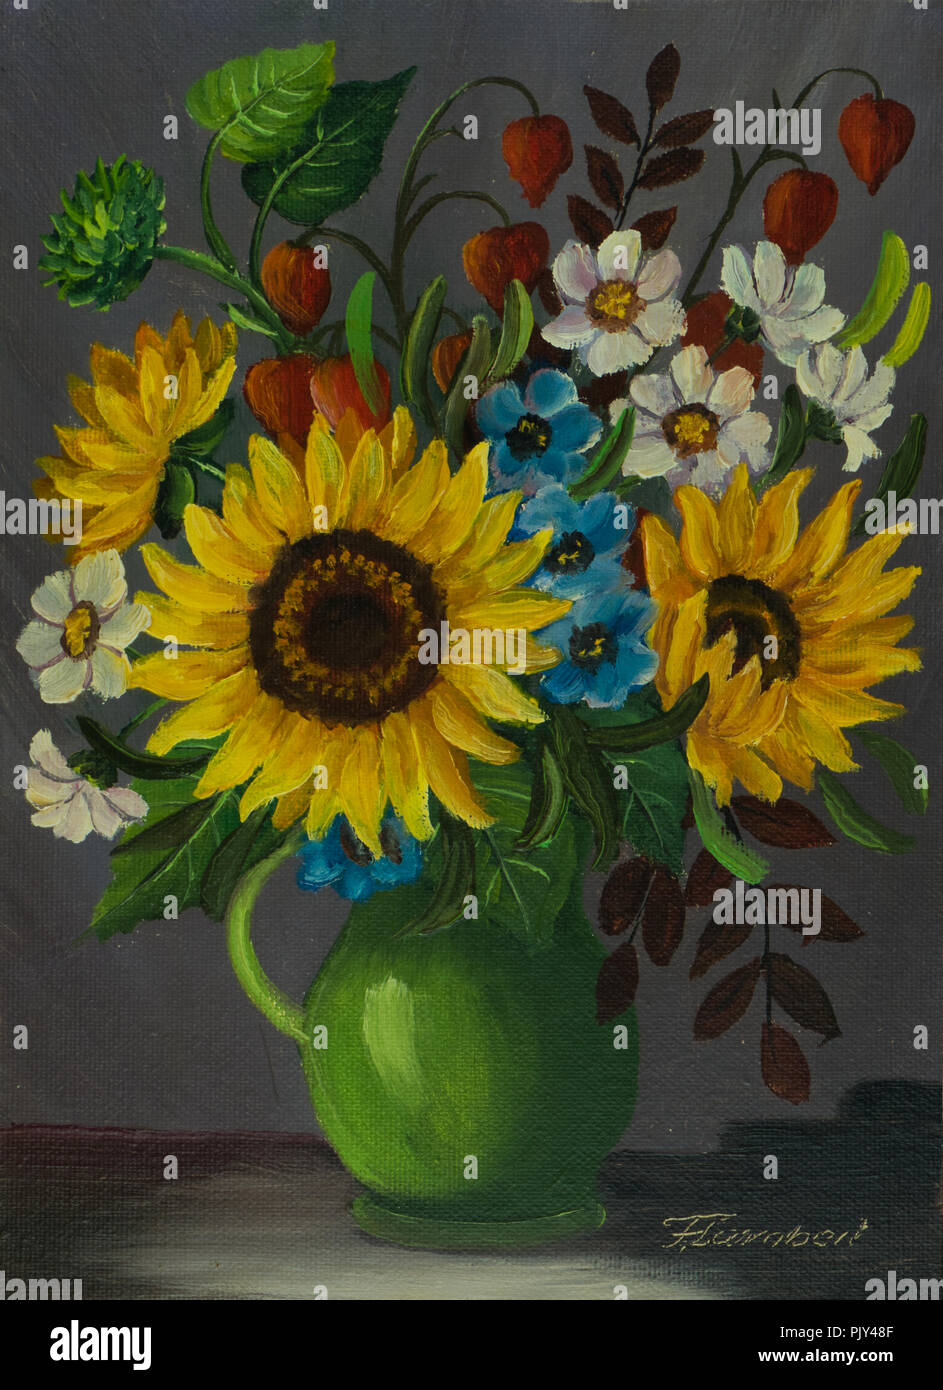 Ölgemälde, eine grüne Vase mit verschiedenen farbigen Blumen Stockfoto